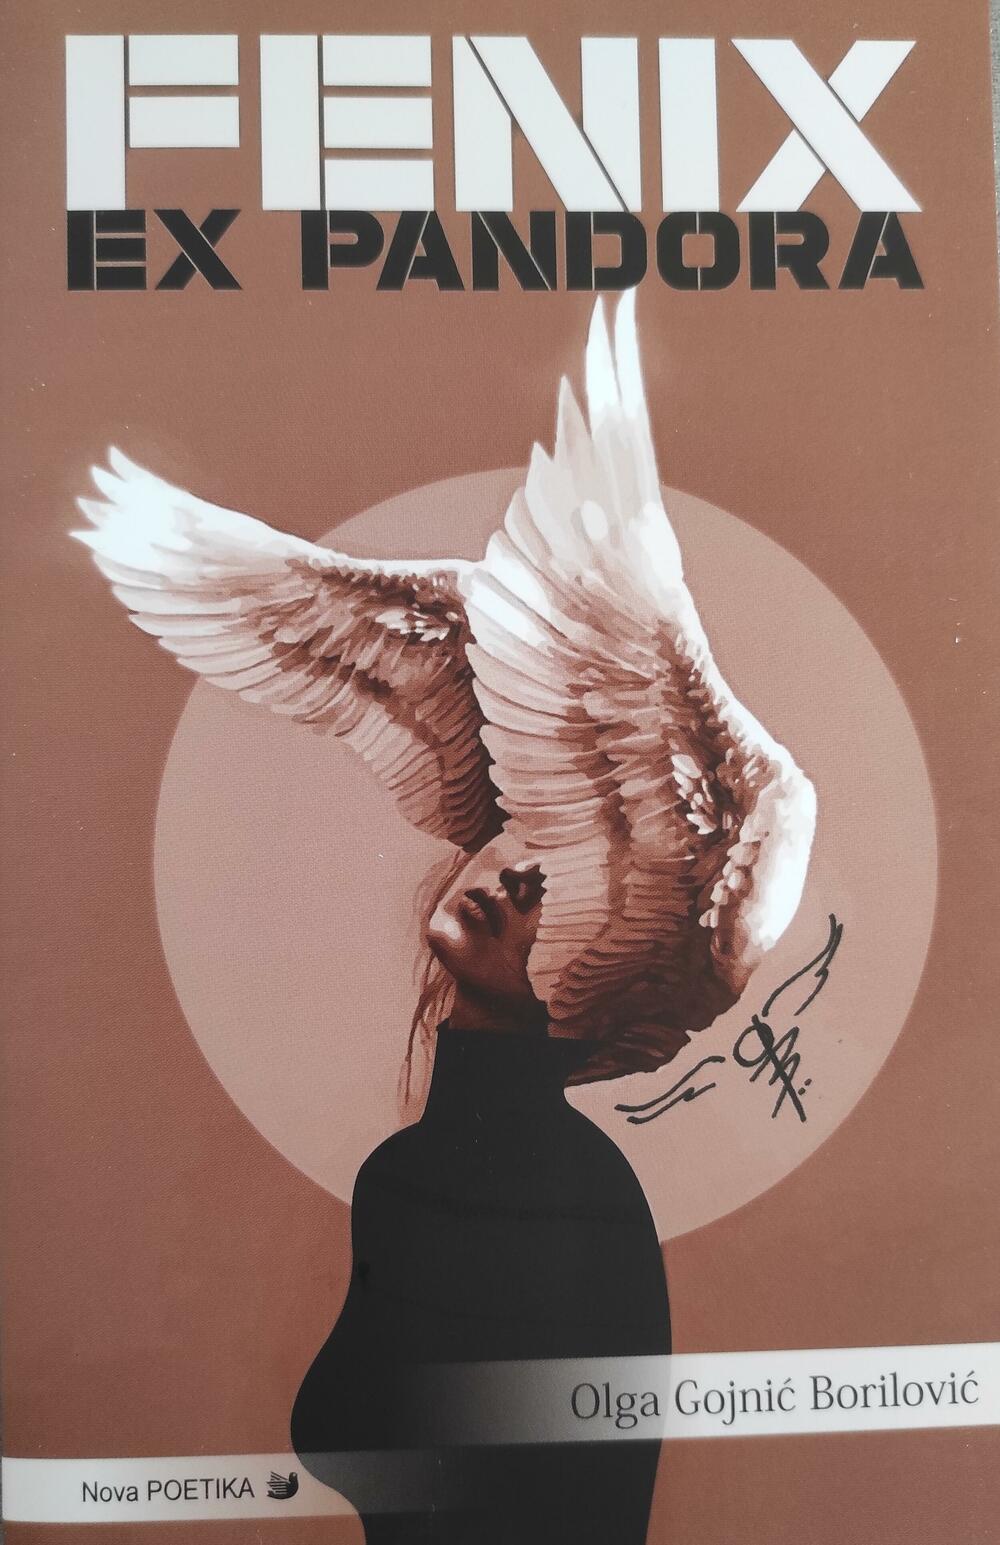 Naslovnica knjige “Fenix ex Pandora”